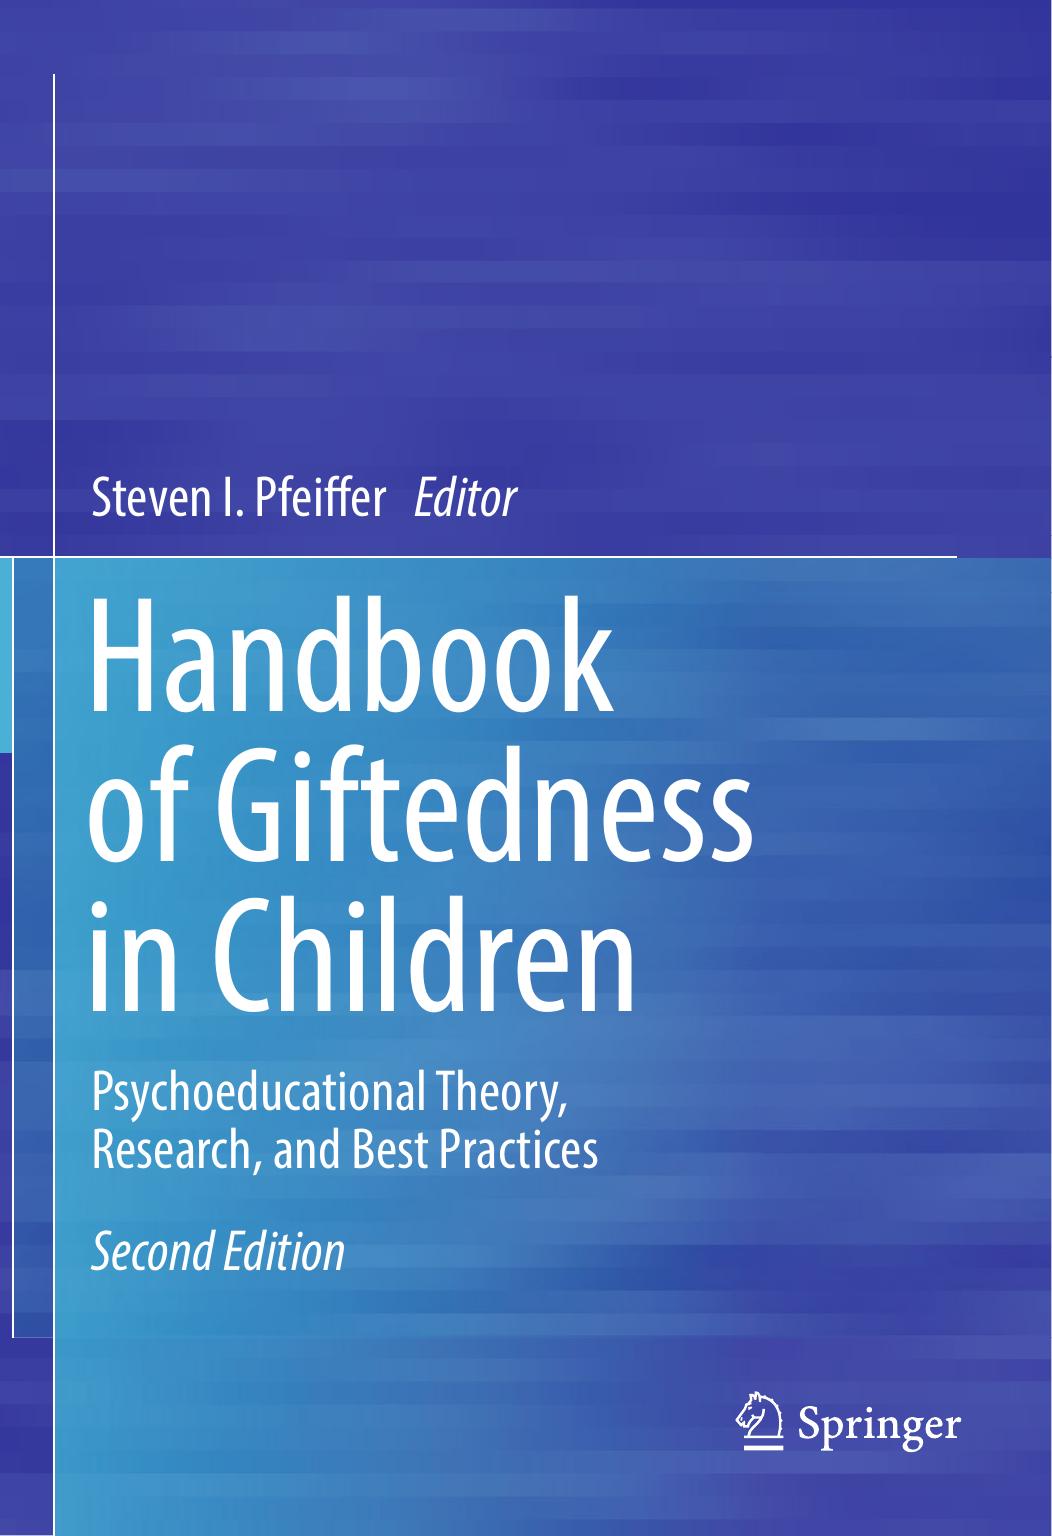 Handbook of Giftedness in Children by Steven I. Pfeiffer